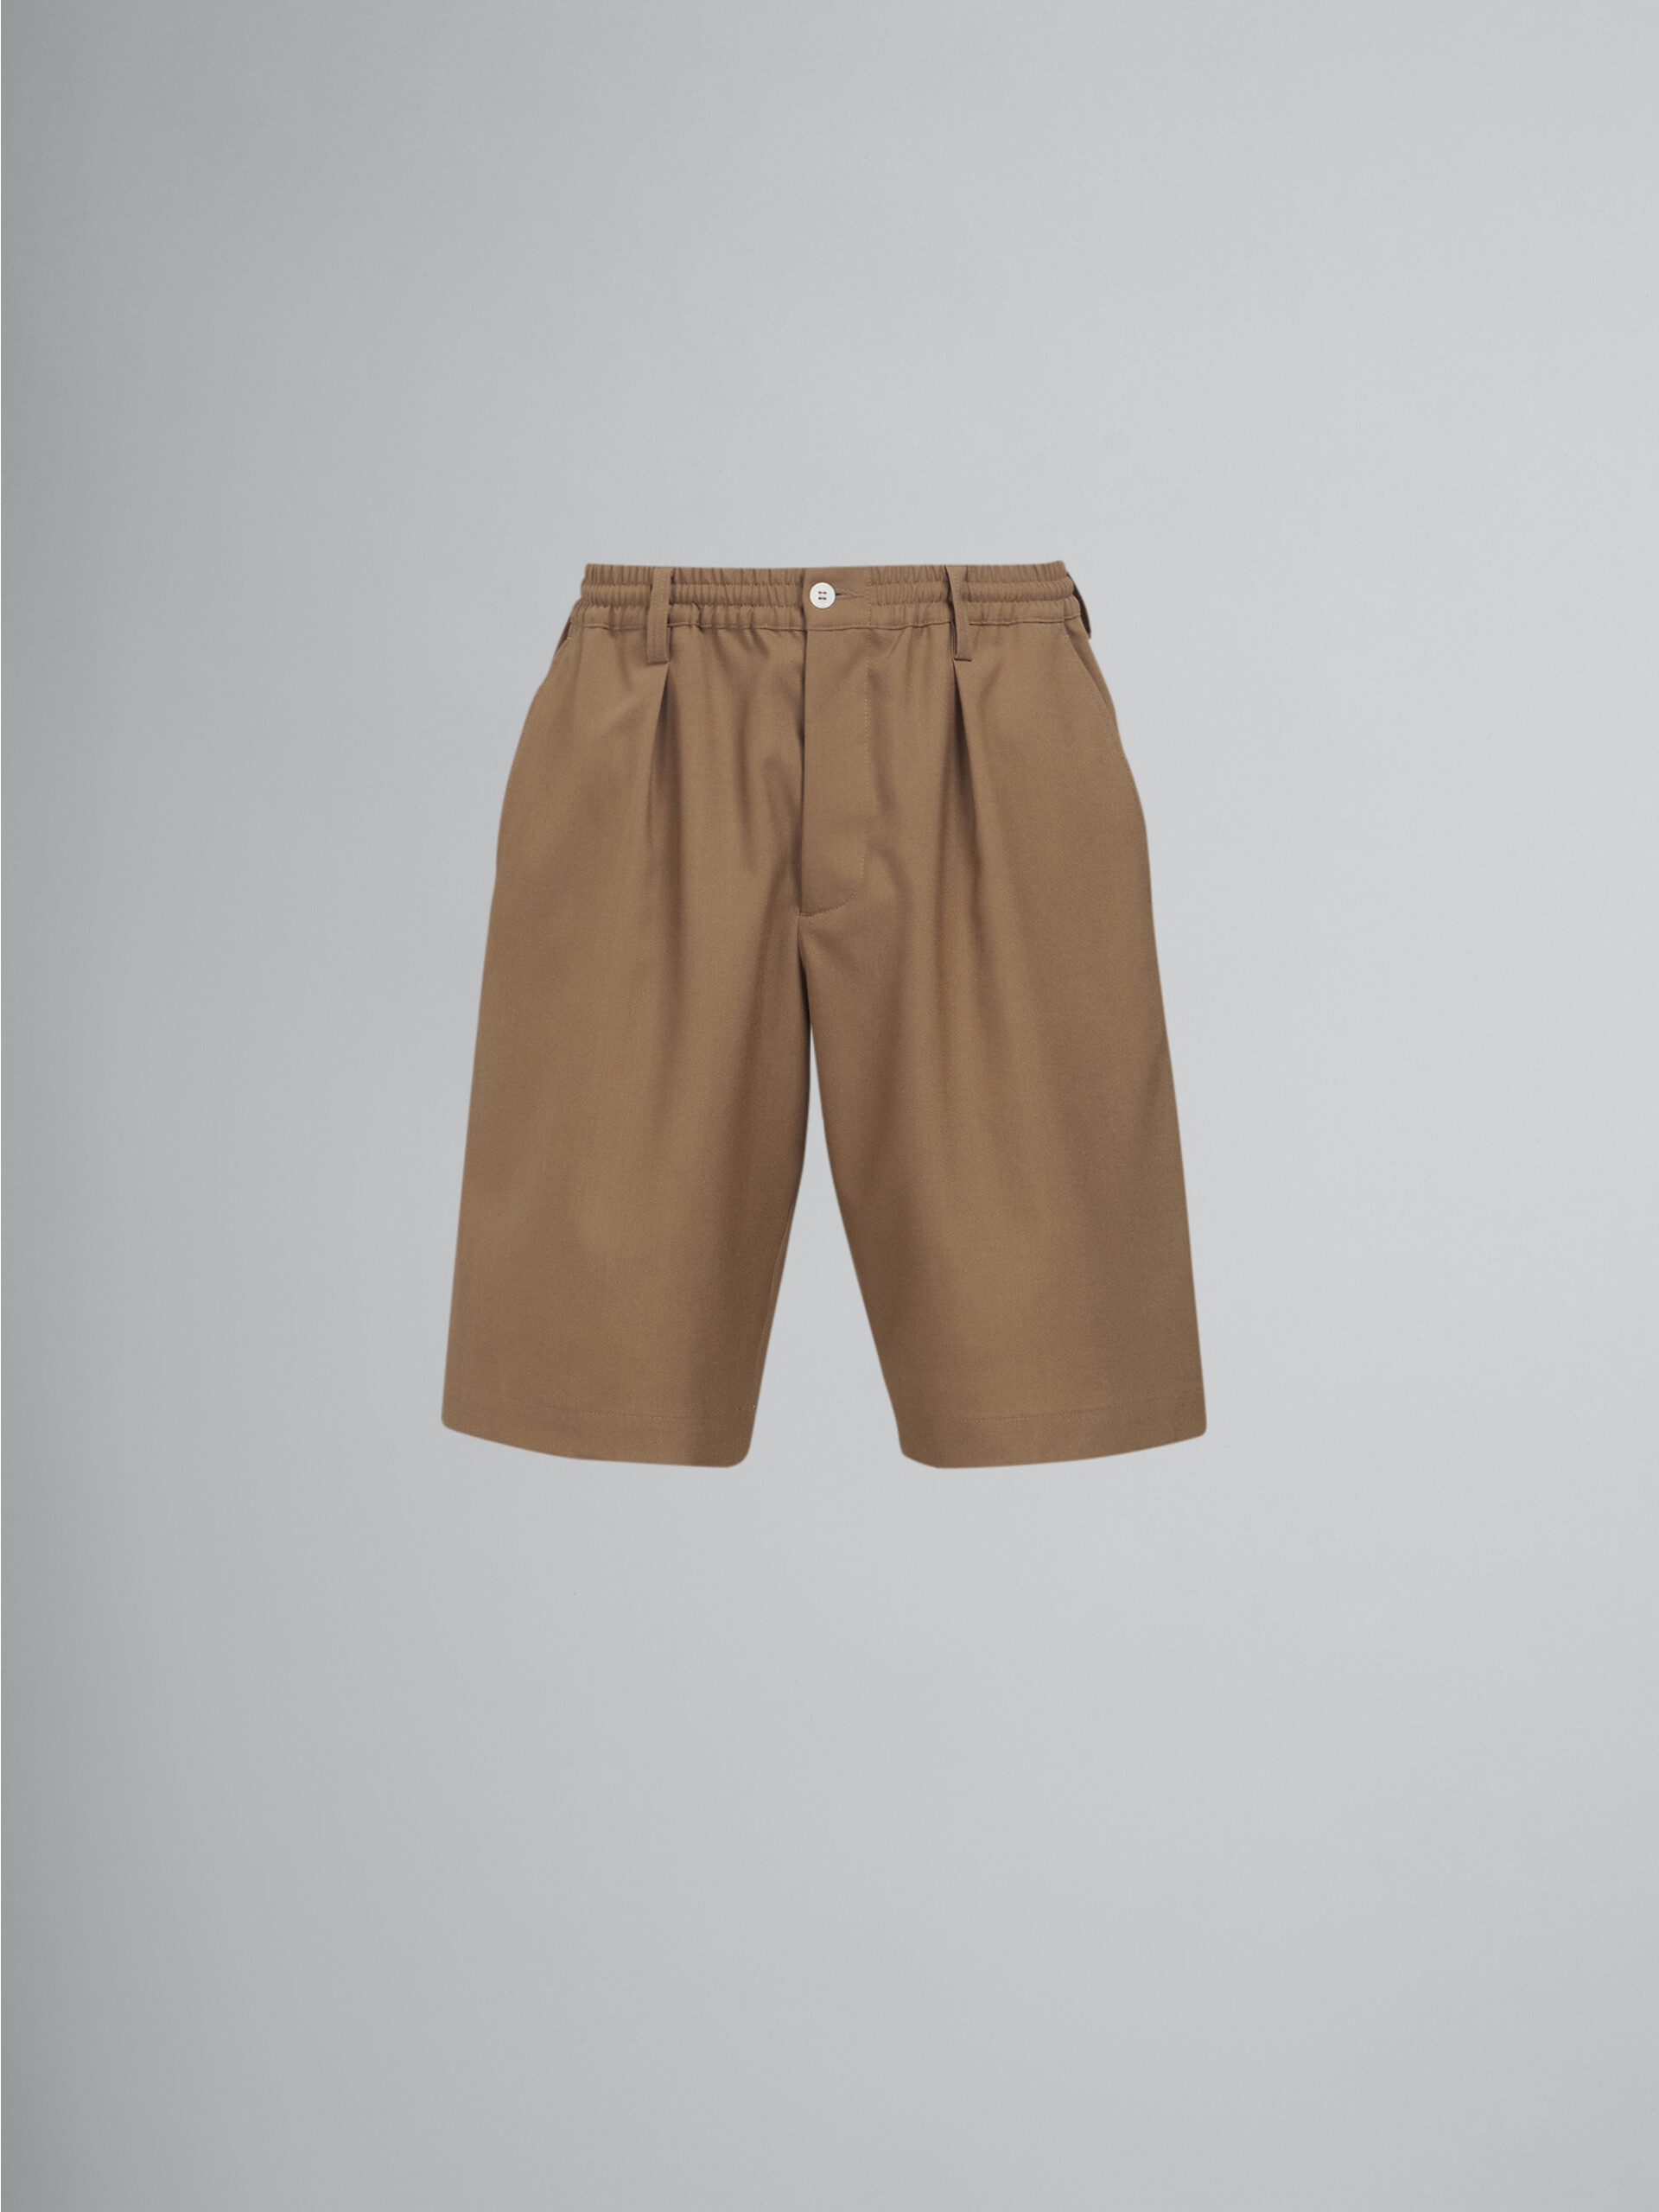 Beige tropical wool Bermuda pants - Pants - Image 1